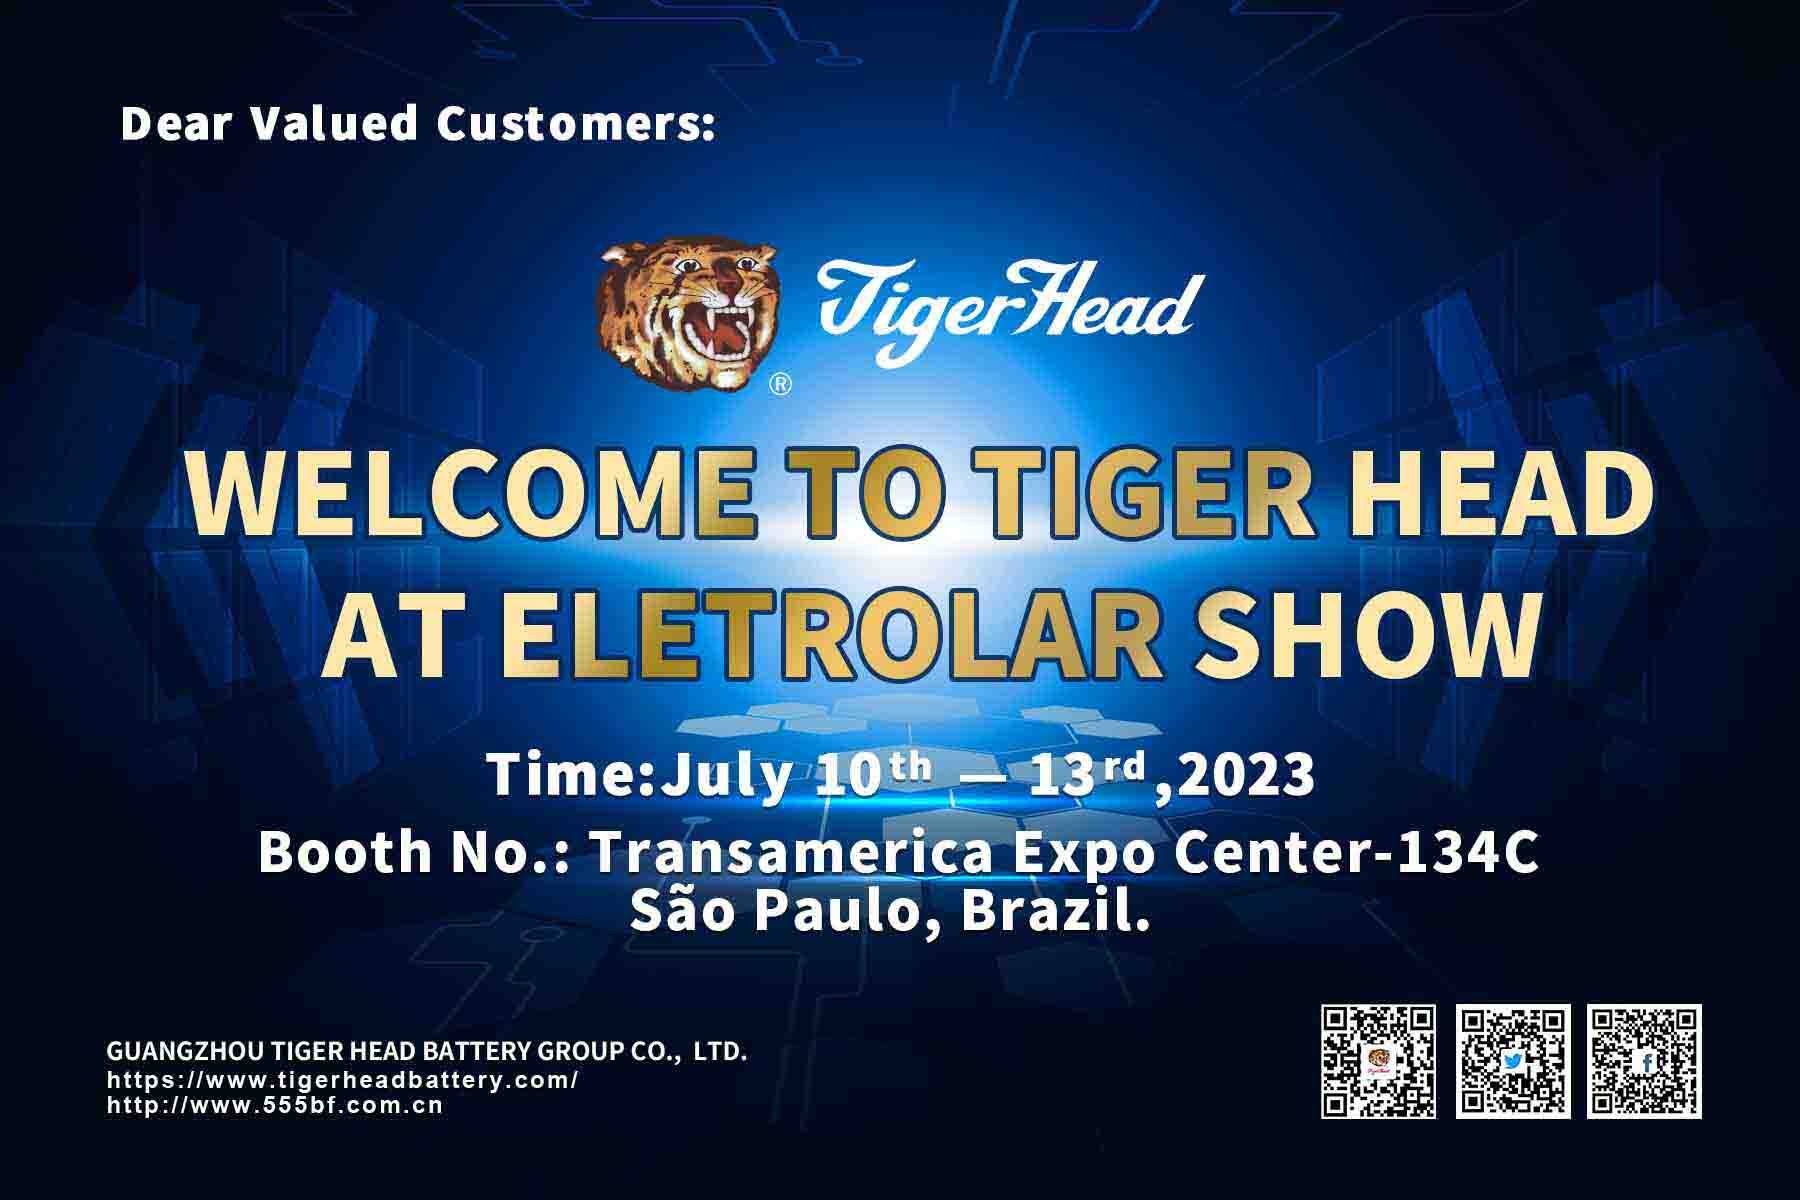 ندعوكم شركة Tiger Head Battery لزيارة معرضنا في معرض Eletrolar في ساو باولو، البرازيل